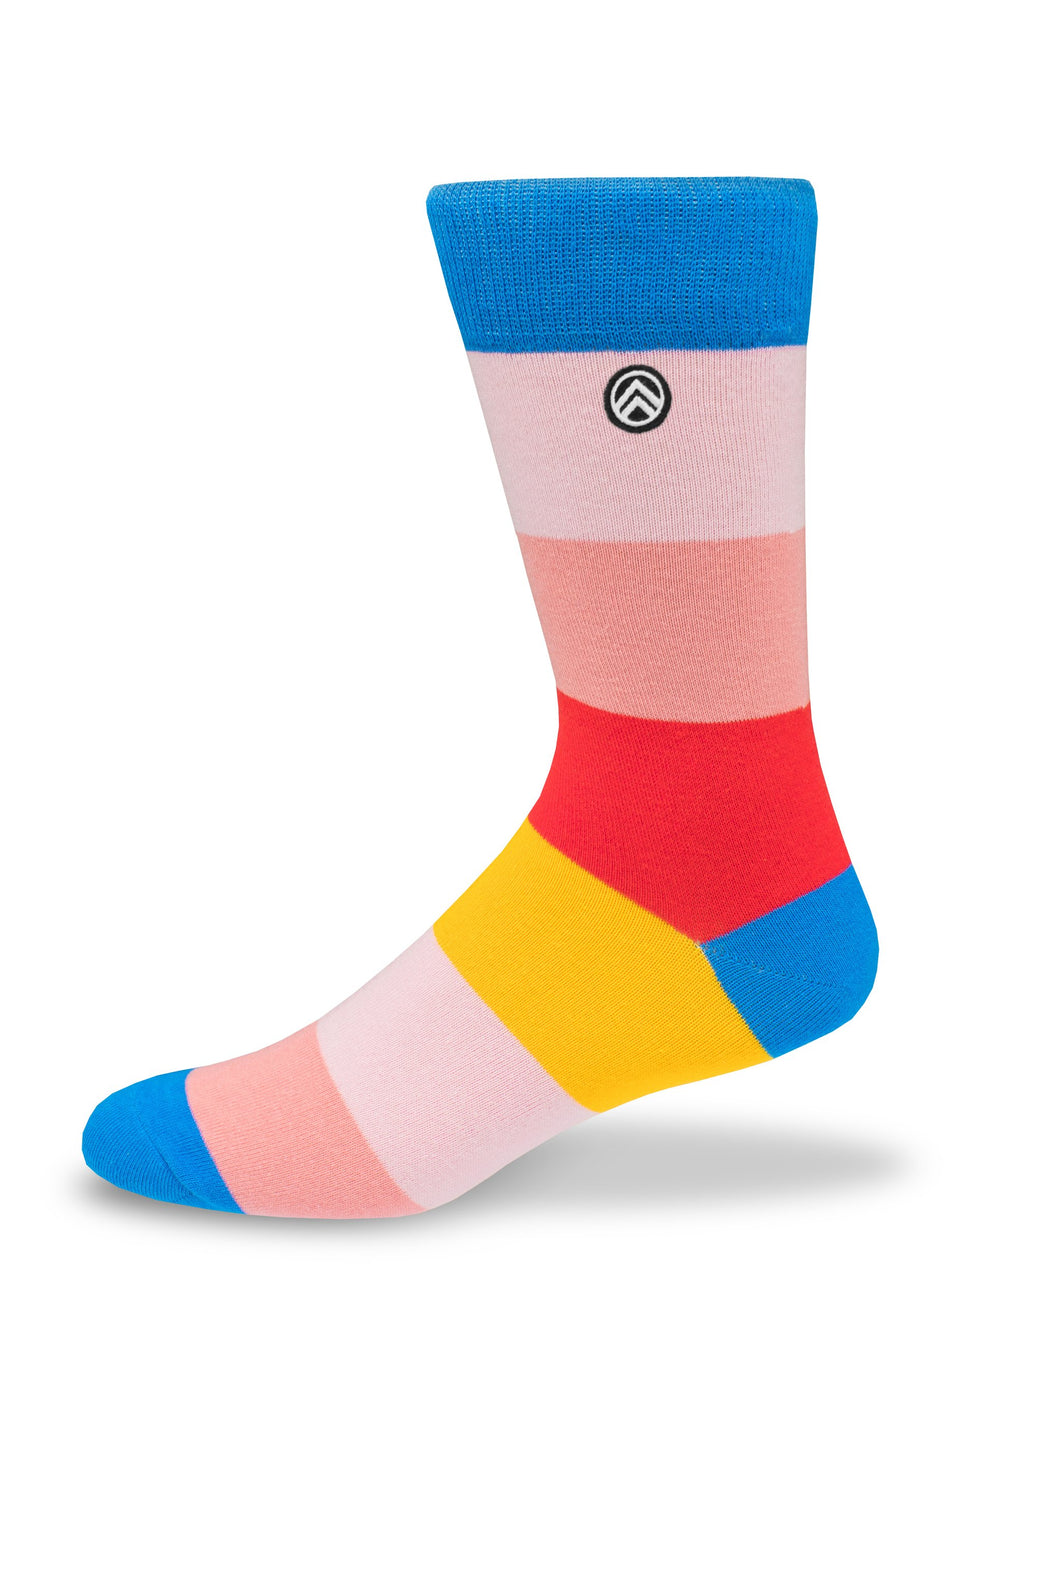 Sky Footwear Socks, Solid Colorful Block Stripes